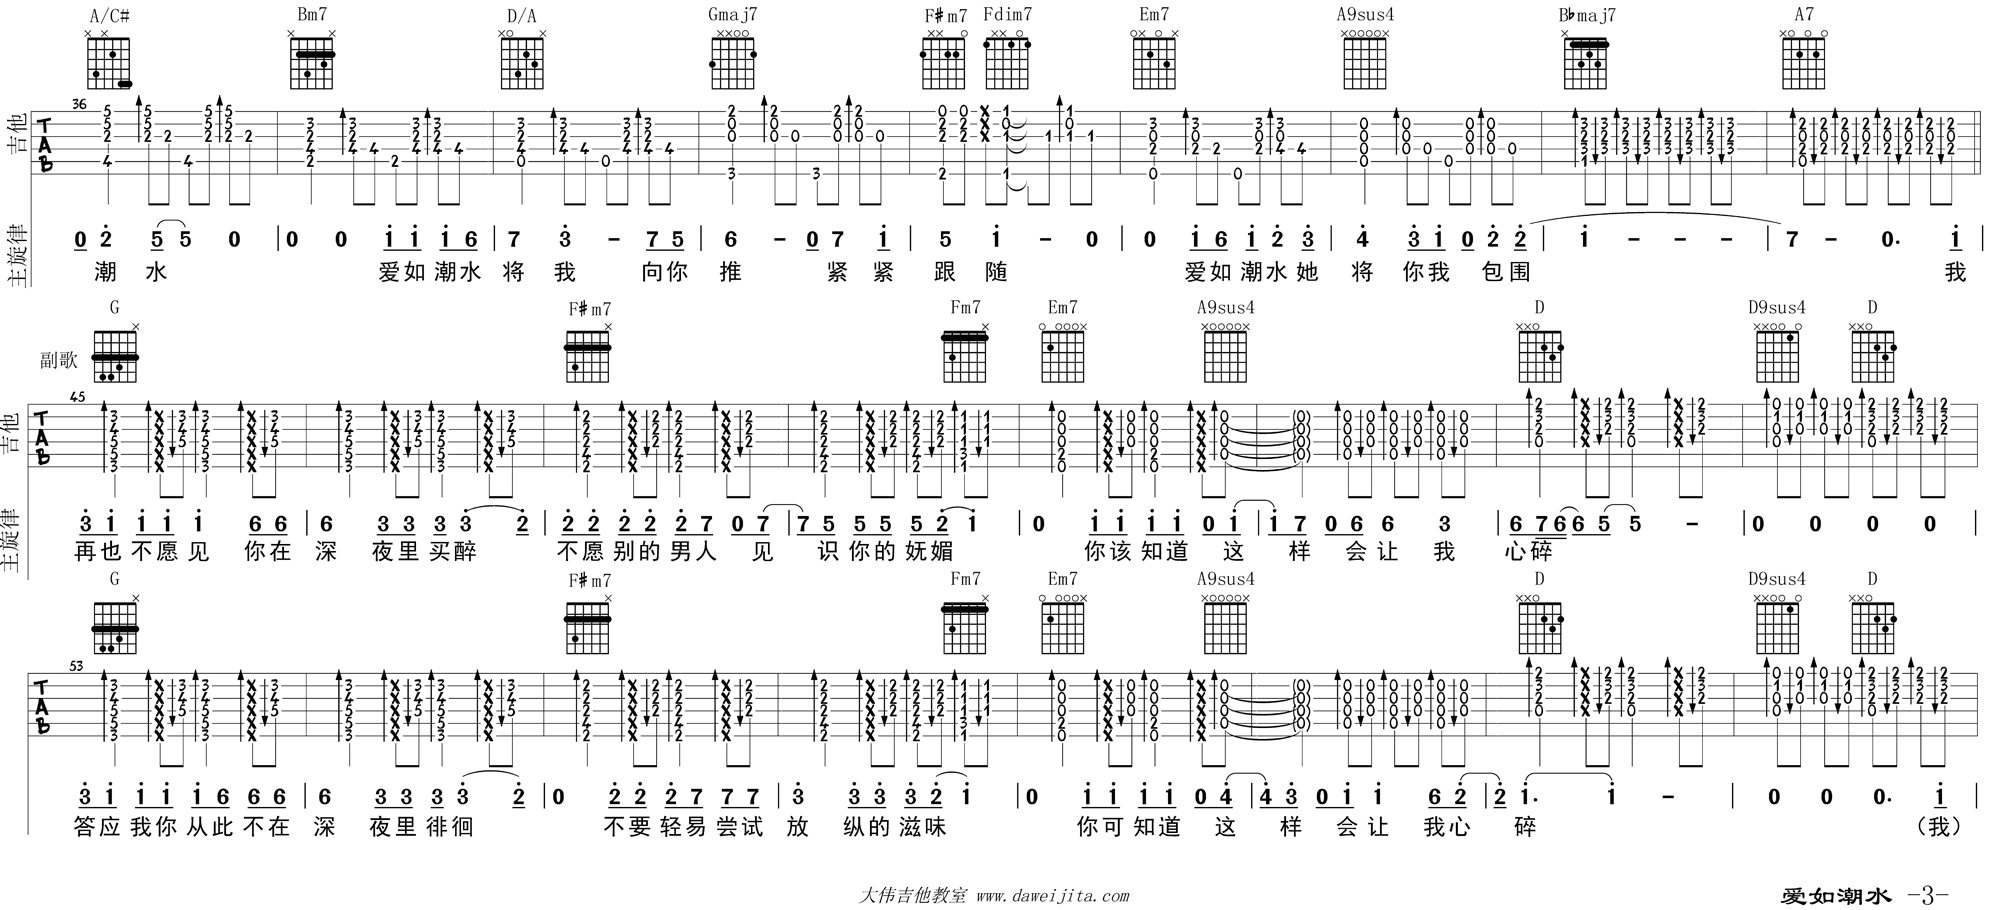 张信哲《爱如潮水 swing 》吉他谱(D调)-Guitar Music Score